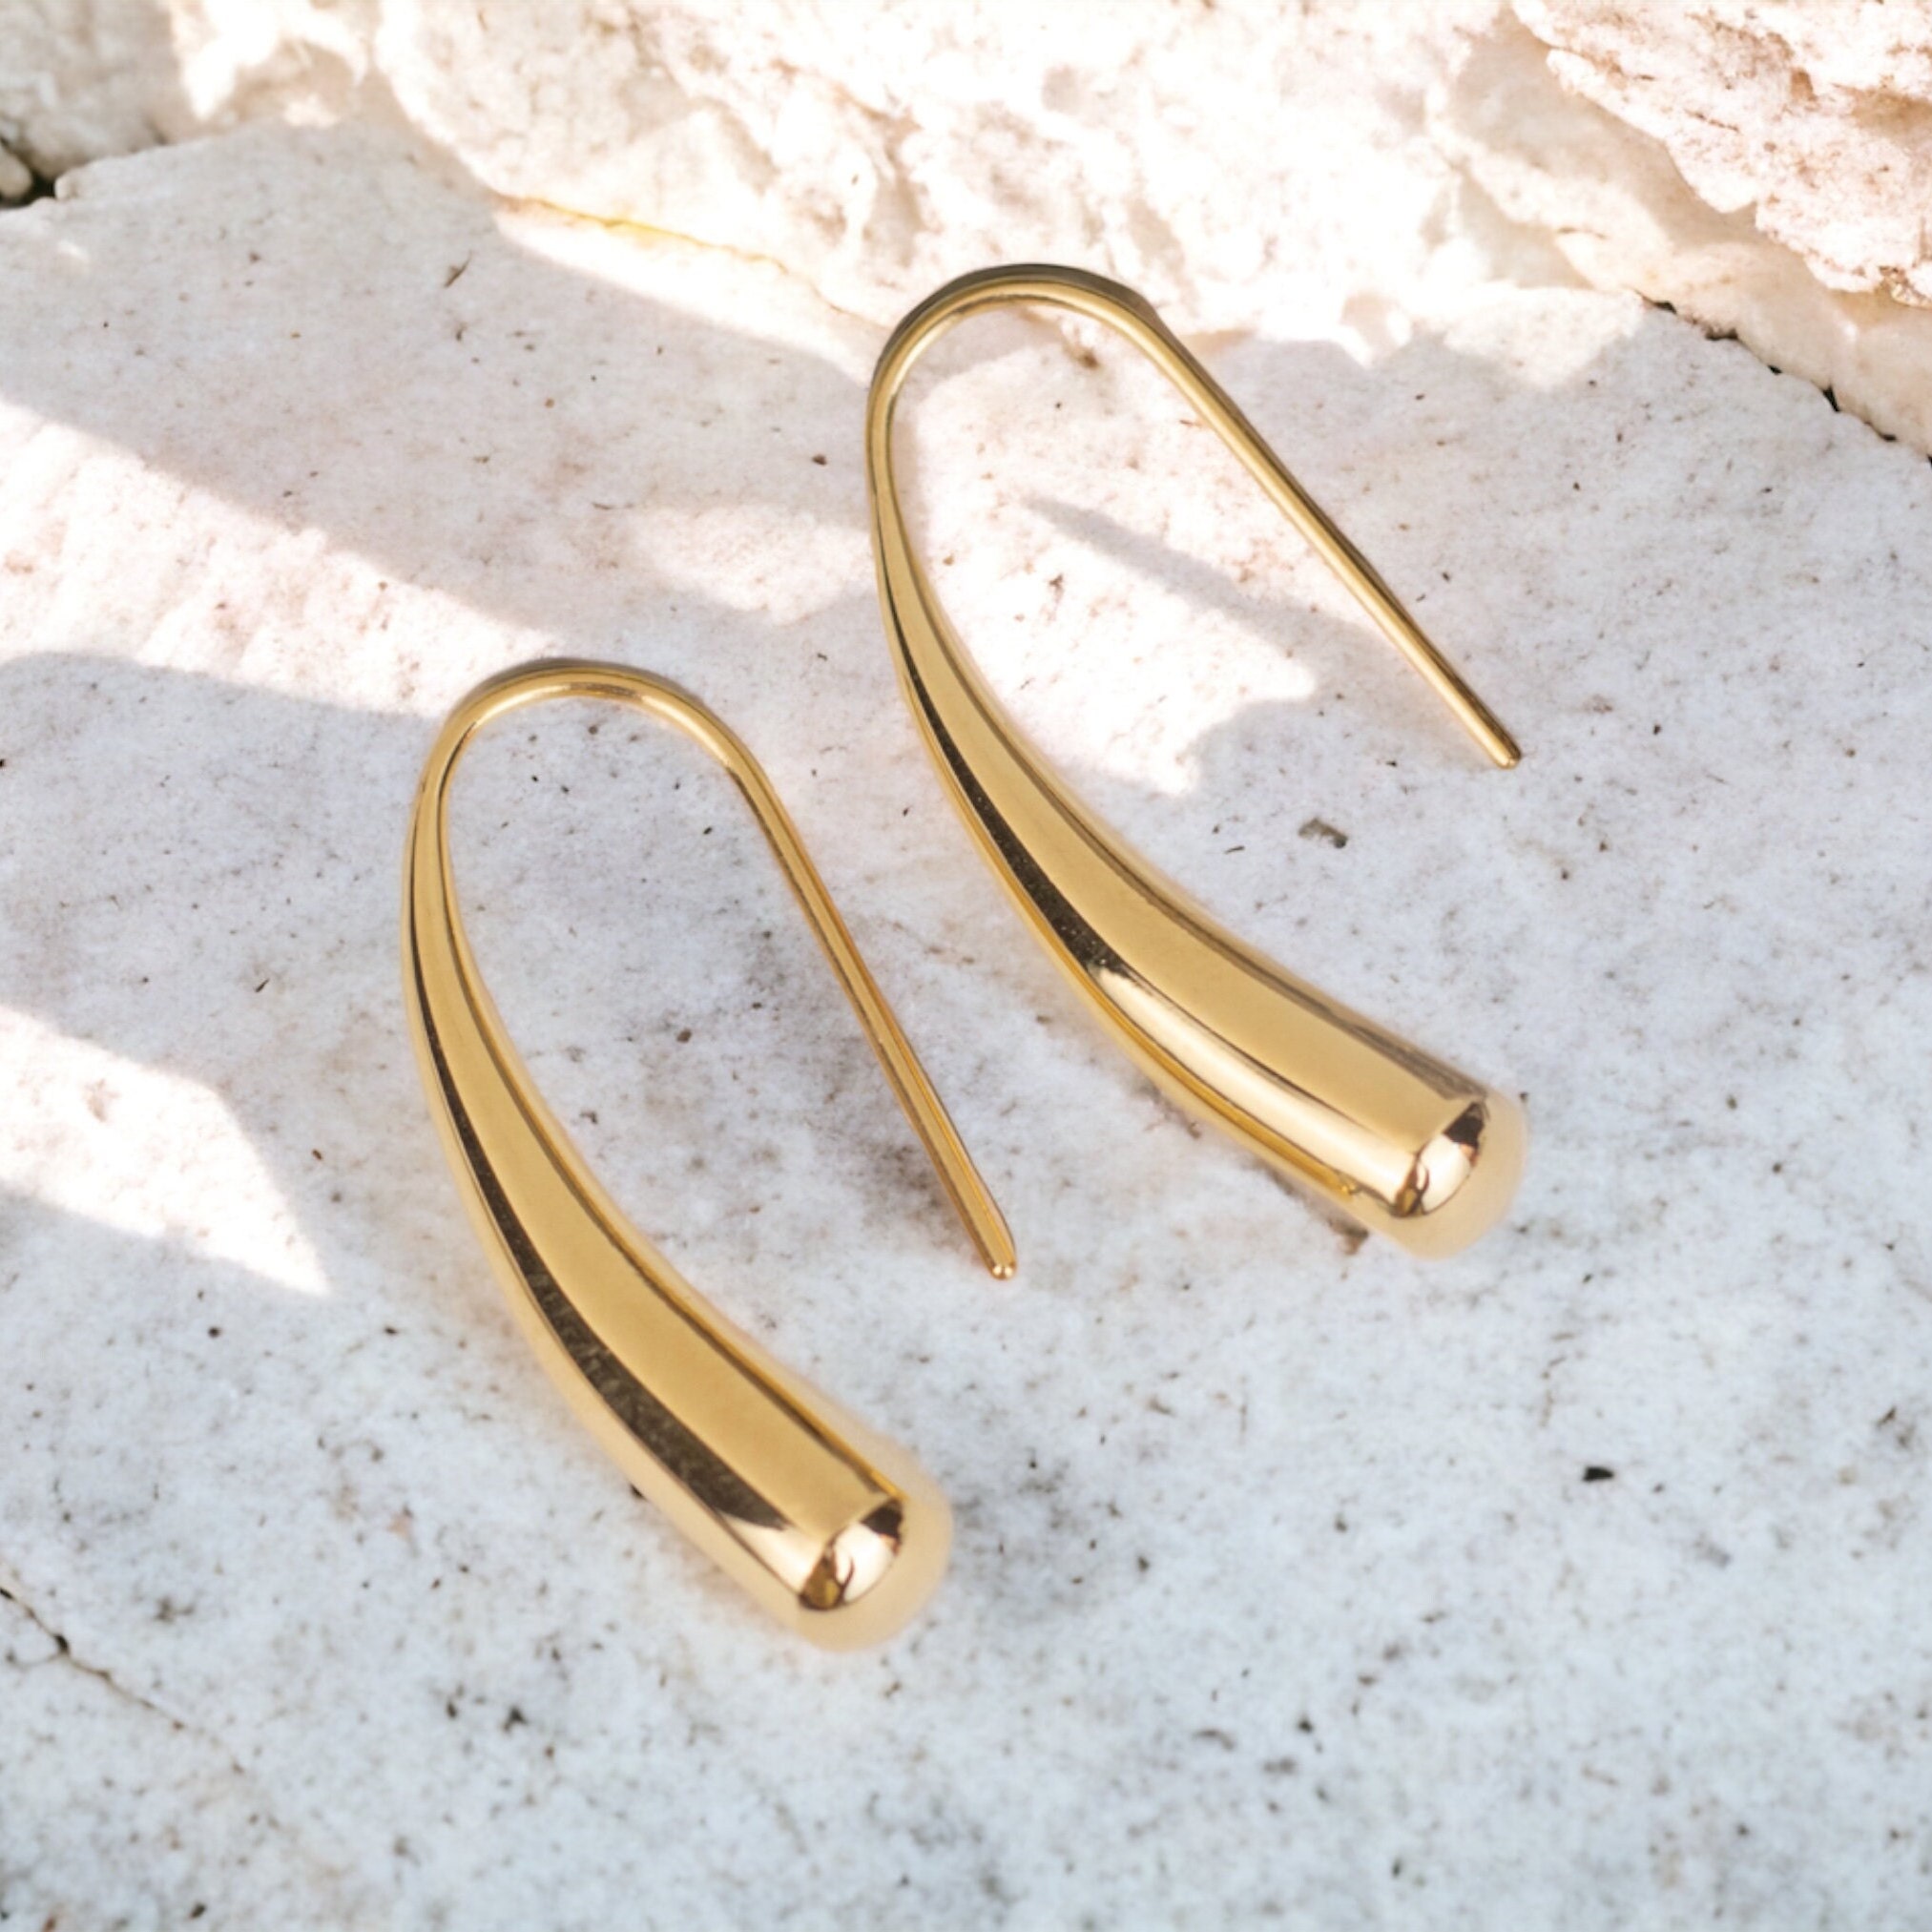 Ear Hook & Earback 200pcs/lot 316L Stainless Steel Earring Clasps Simple  Hook Earring Base for Jewelry Making DIY Drop Earring Findings Supplies for  Jewelry Making DIY 